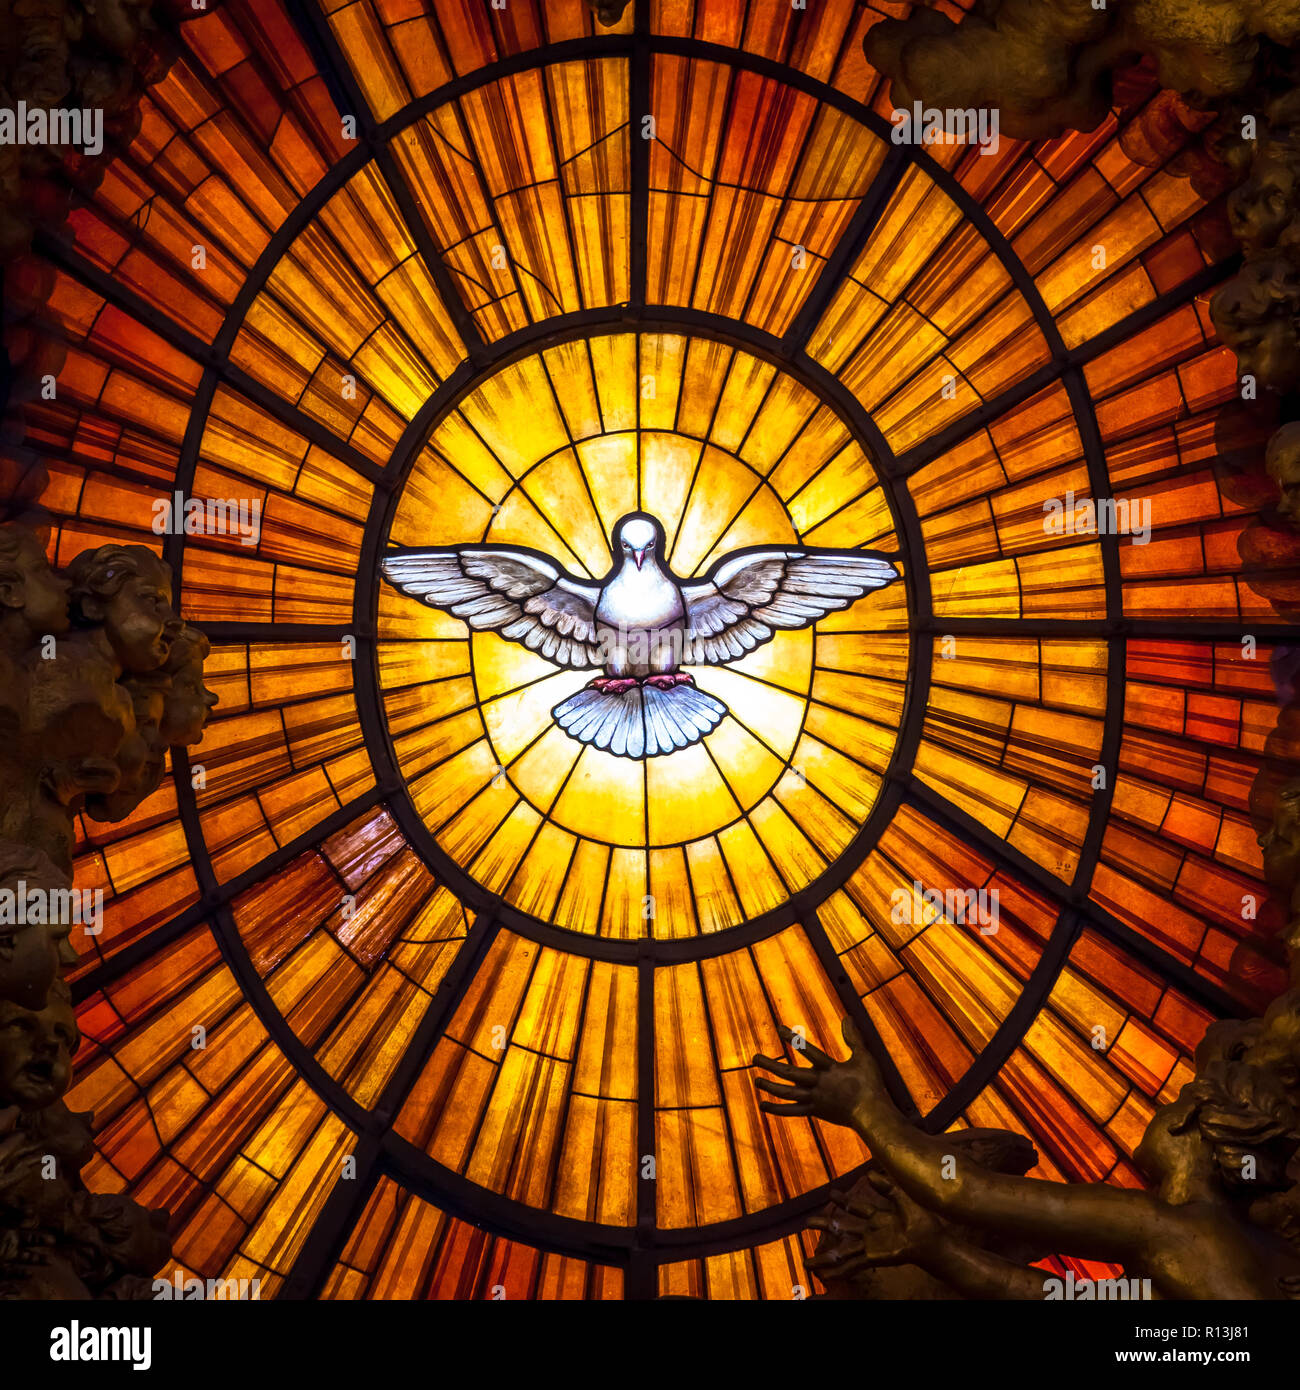 ROME, ITALIE - 24 août 2018 : Discours du Trône Bernini Saint-esprit Dove la Basilique Saint Pierre Vatican Rome Italie. Bernini créé le trône de saint Pierre avec Ho Banque D'Images